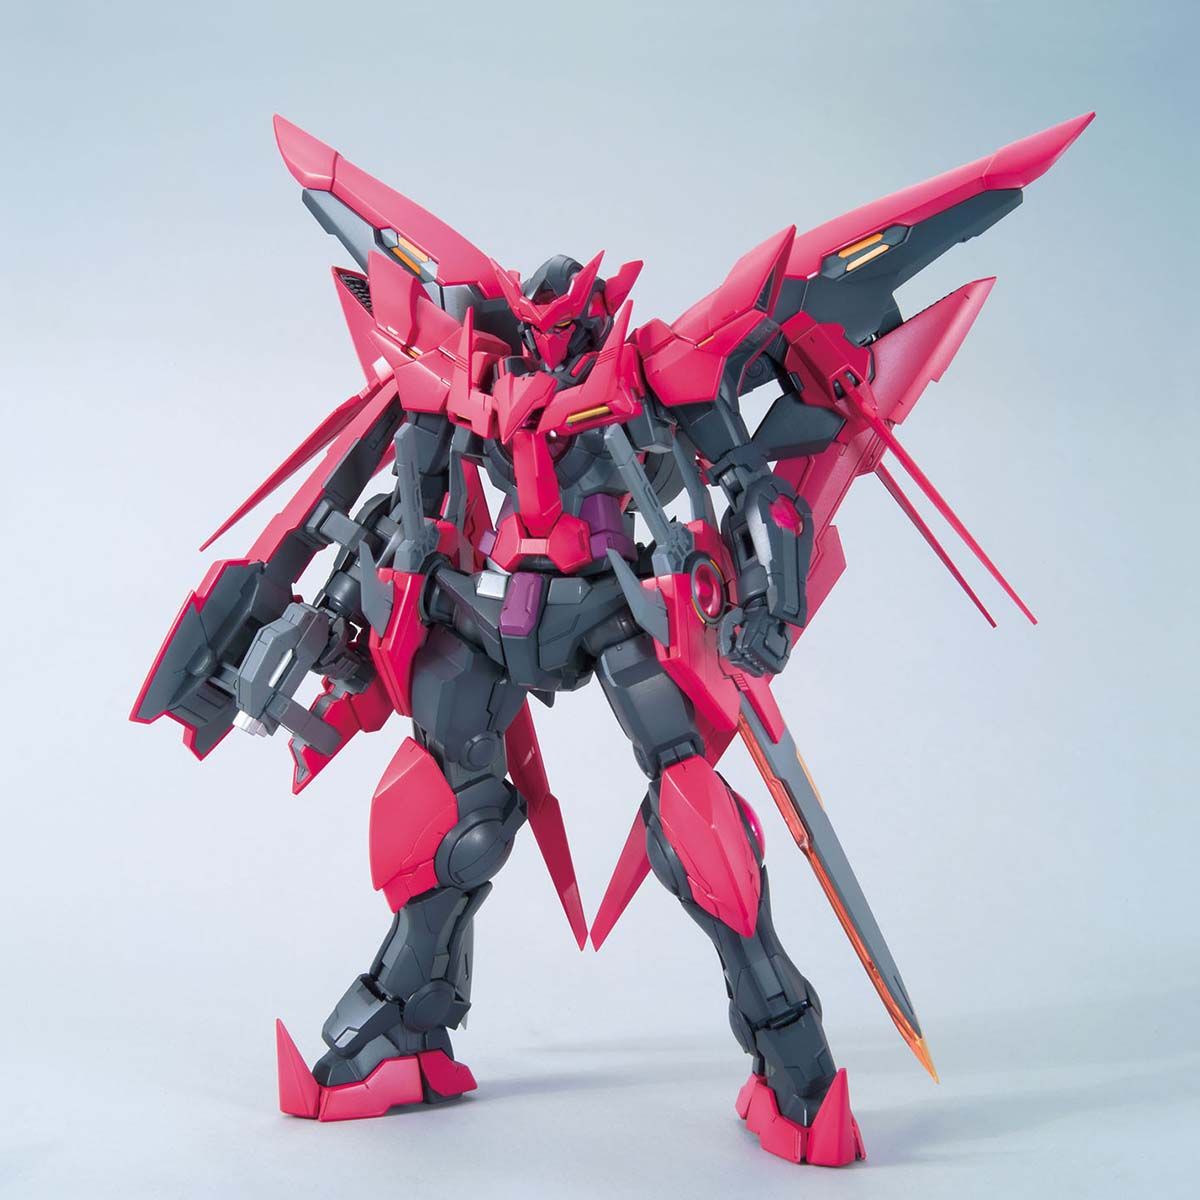 597261/100 ガンダムRXF91改 [Gundam RXF91 Kai]